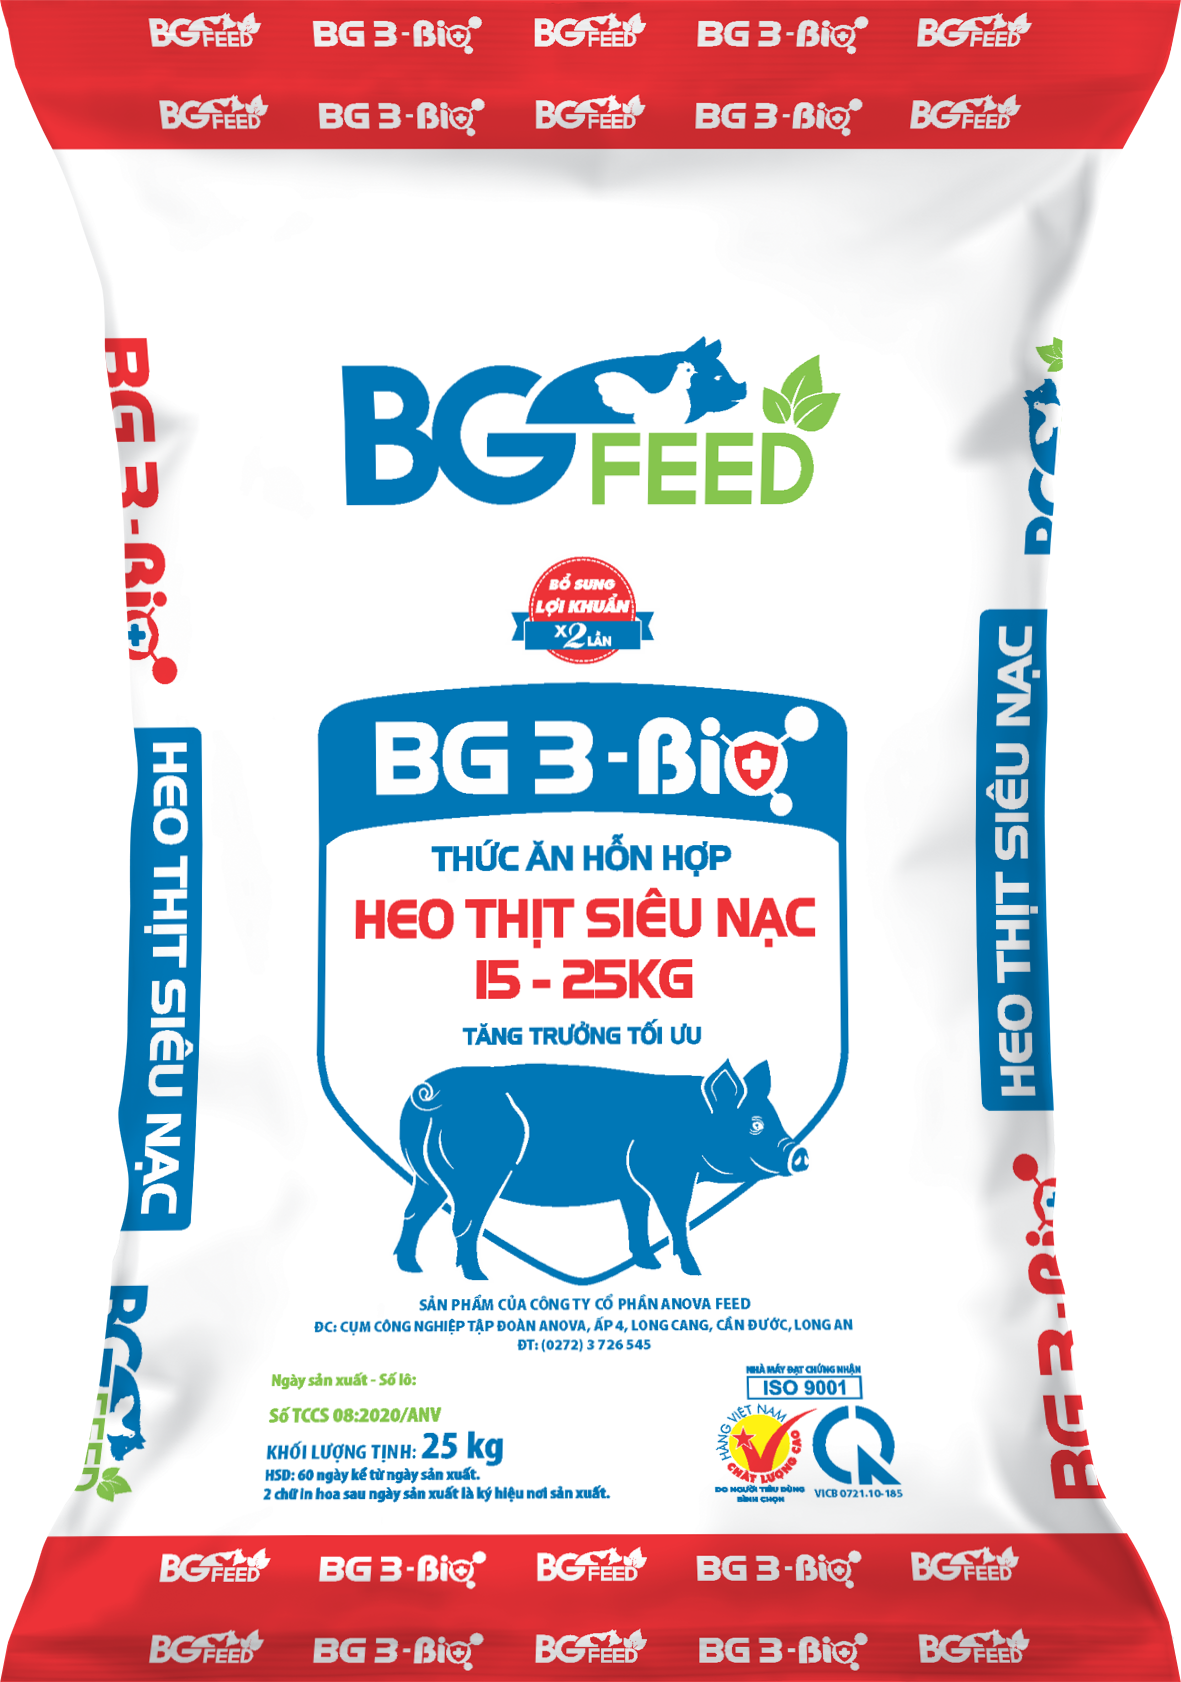 Thức ăn hỗn hợp heo thịt siêu nạc từ 15 - 25kg BG 3 - Bio